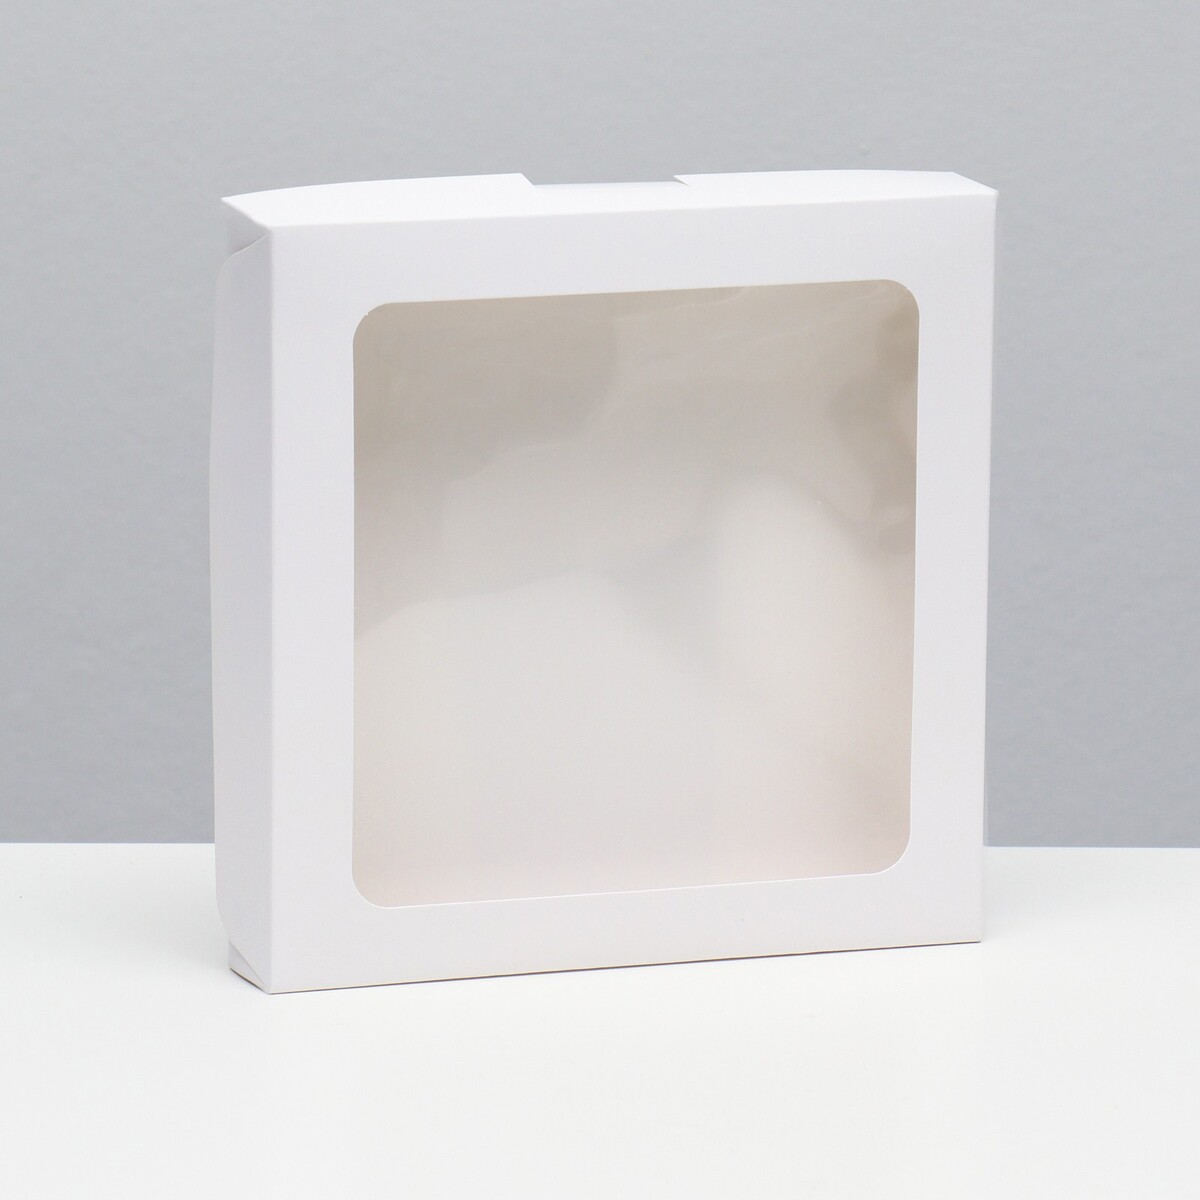 Коробка самосборная, белая, 19 х 19 х 3 см коробка самосборная белая 21 х 21 х 3 см